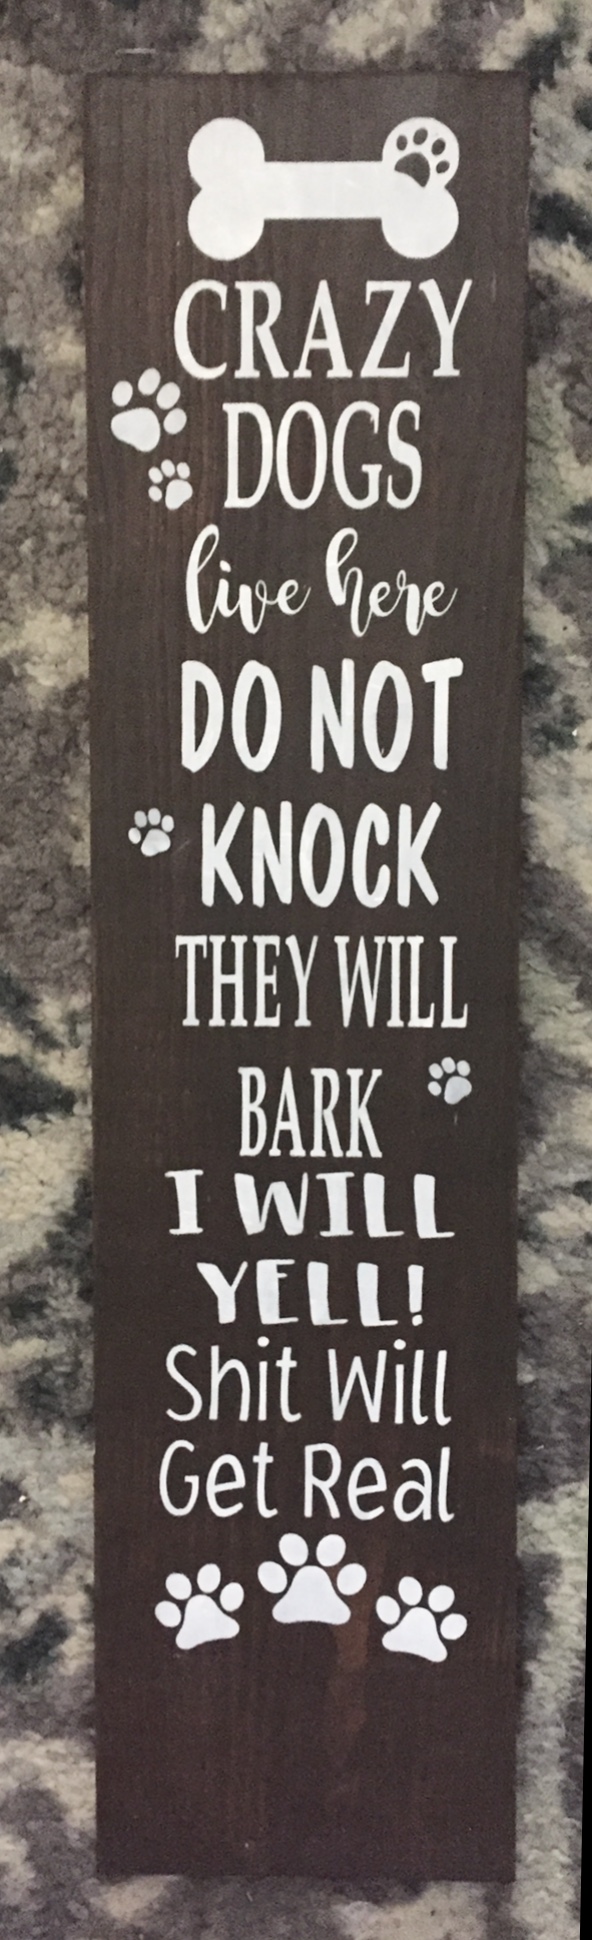 Do not knock